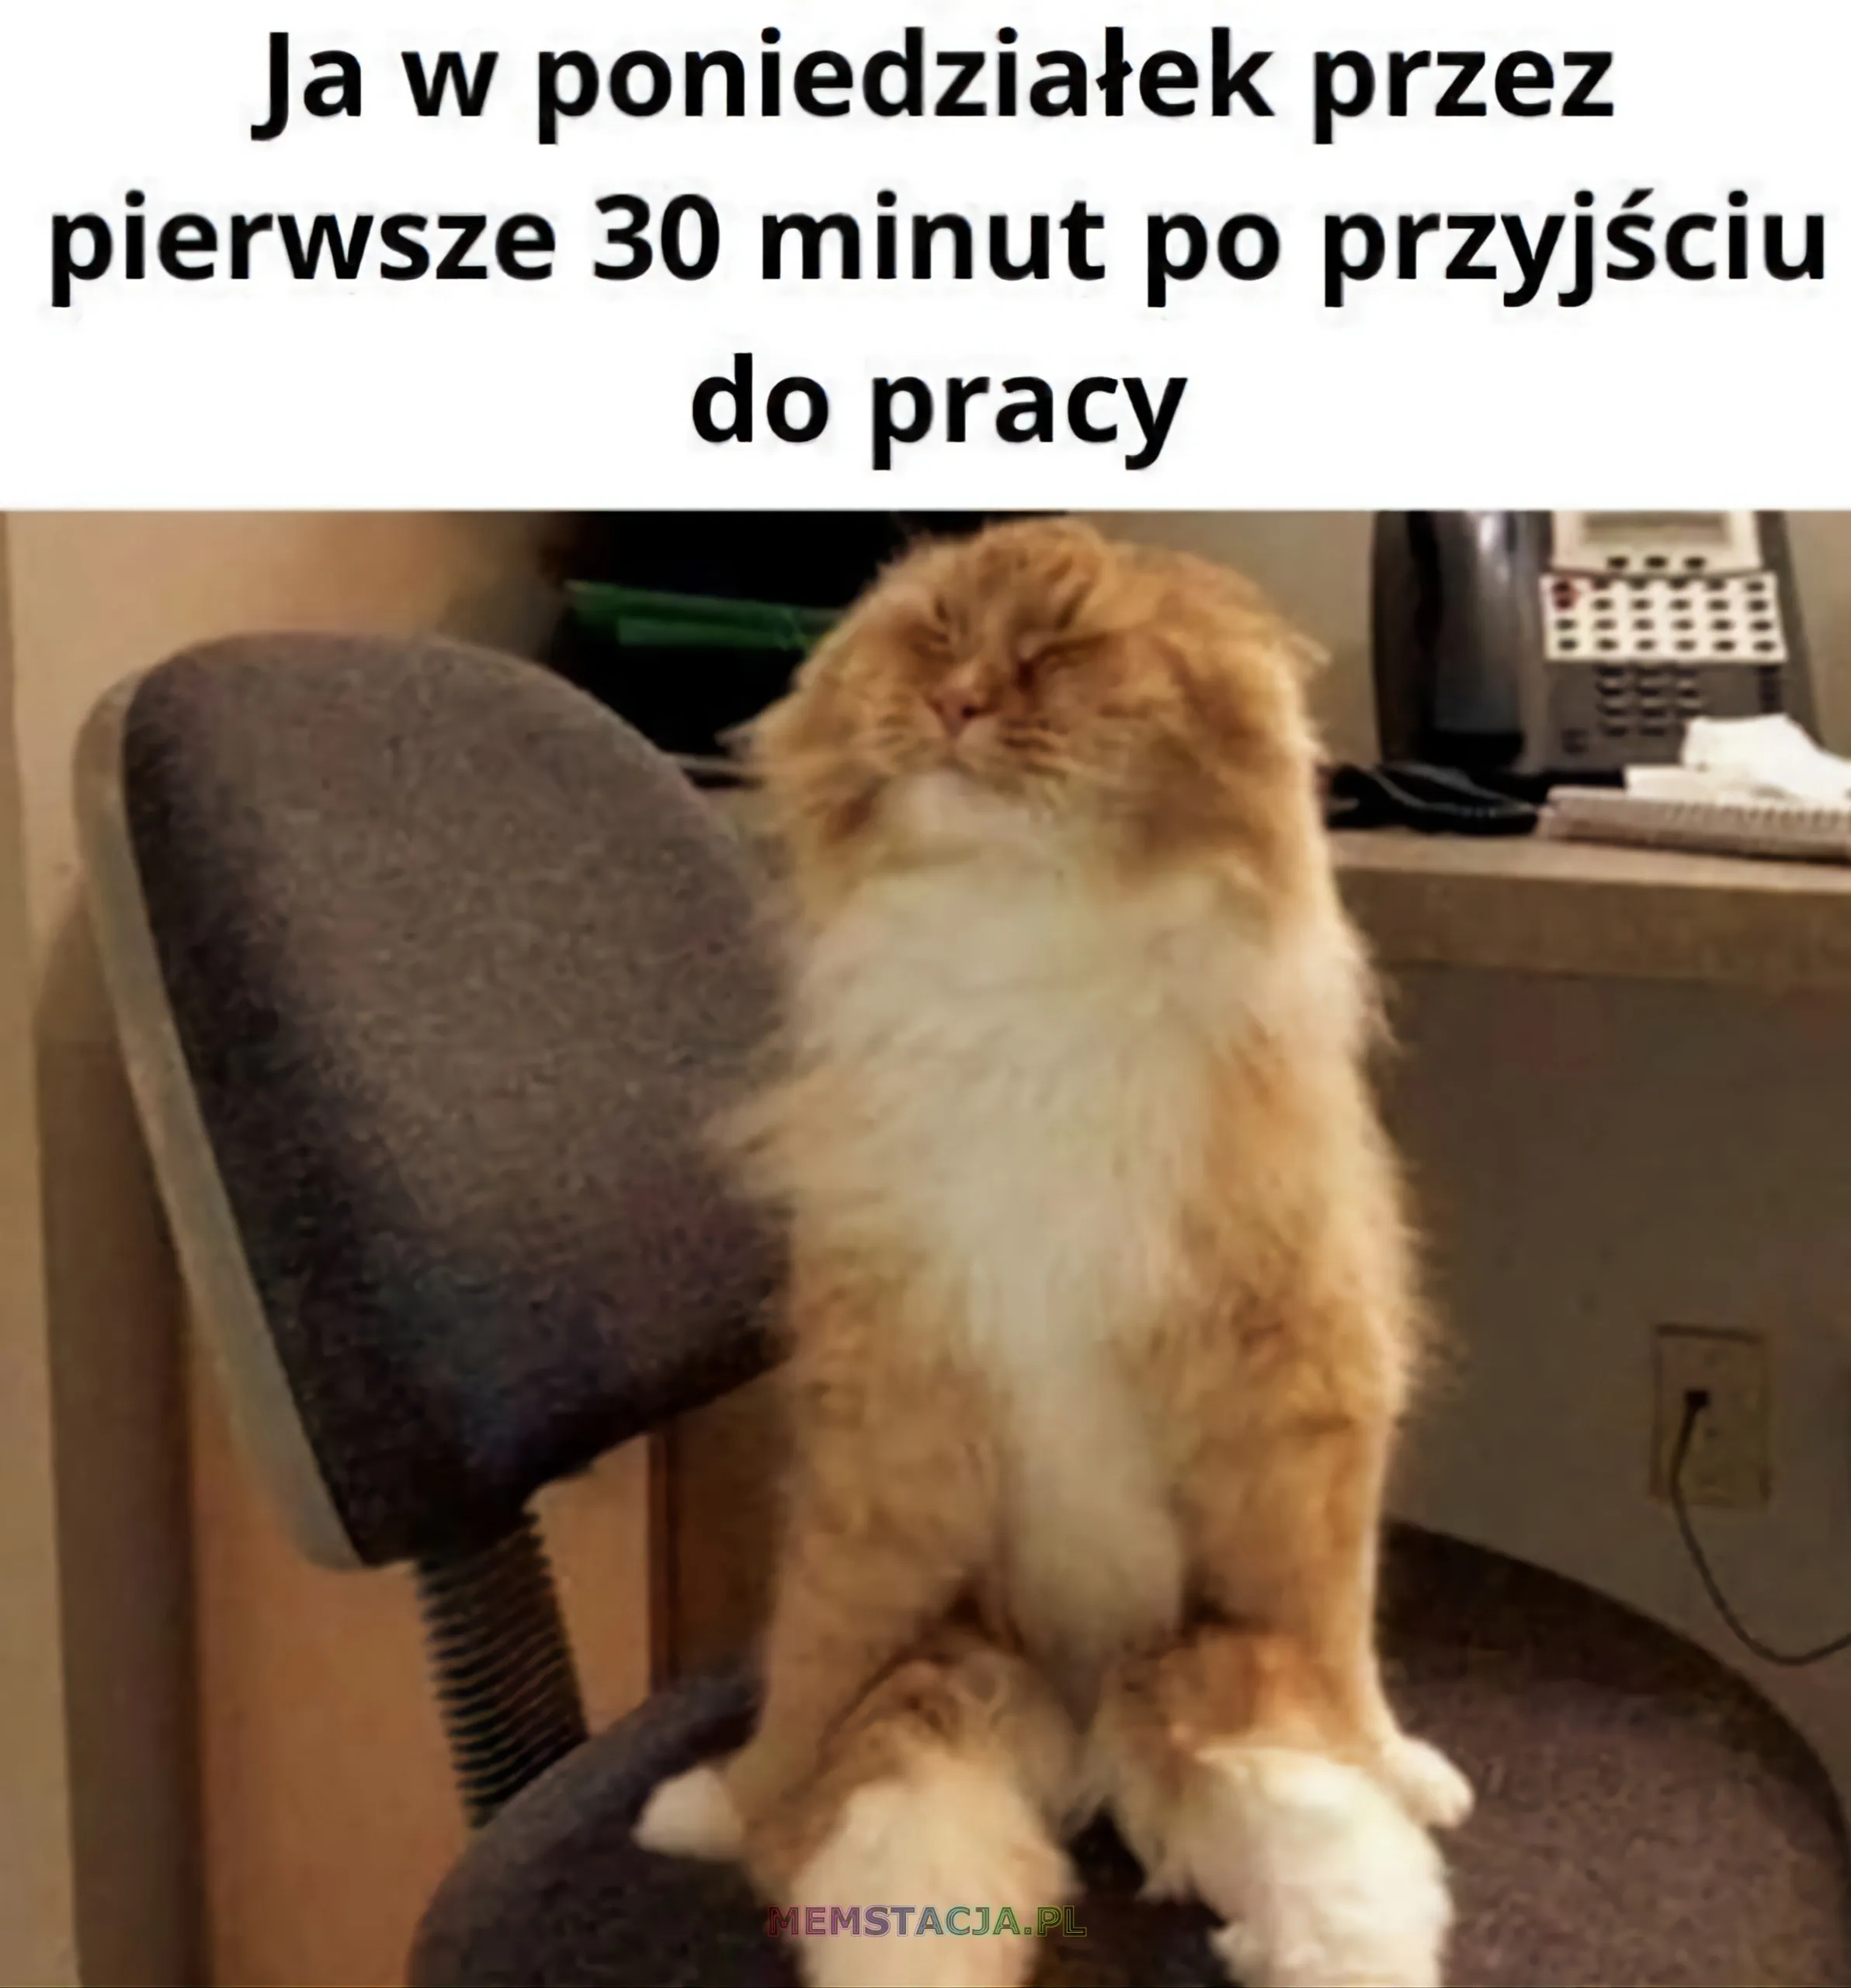 Mem przedstawiający rozciągającego się kota, na stanowisku pracy: 'Ja w poniedziałek przez pierwsze trzydzieści minut po przyjściu do pracy'